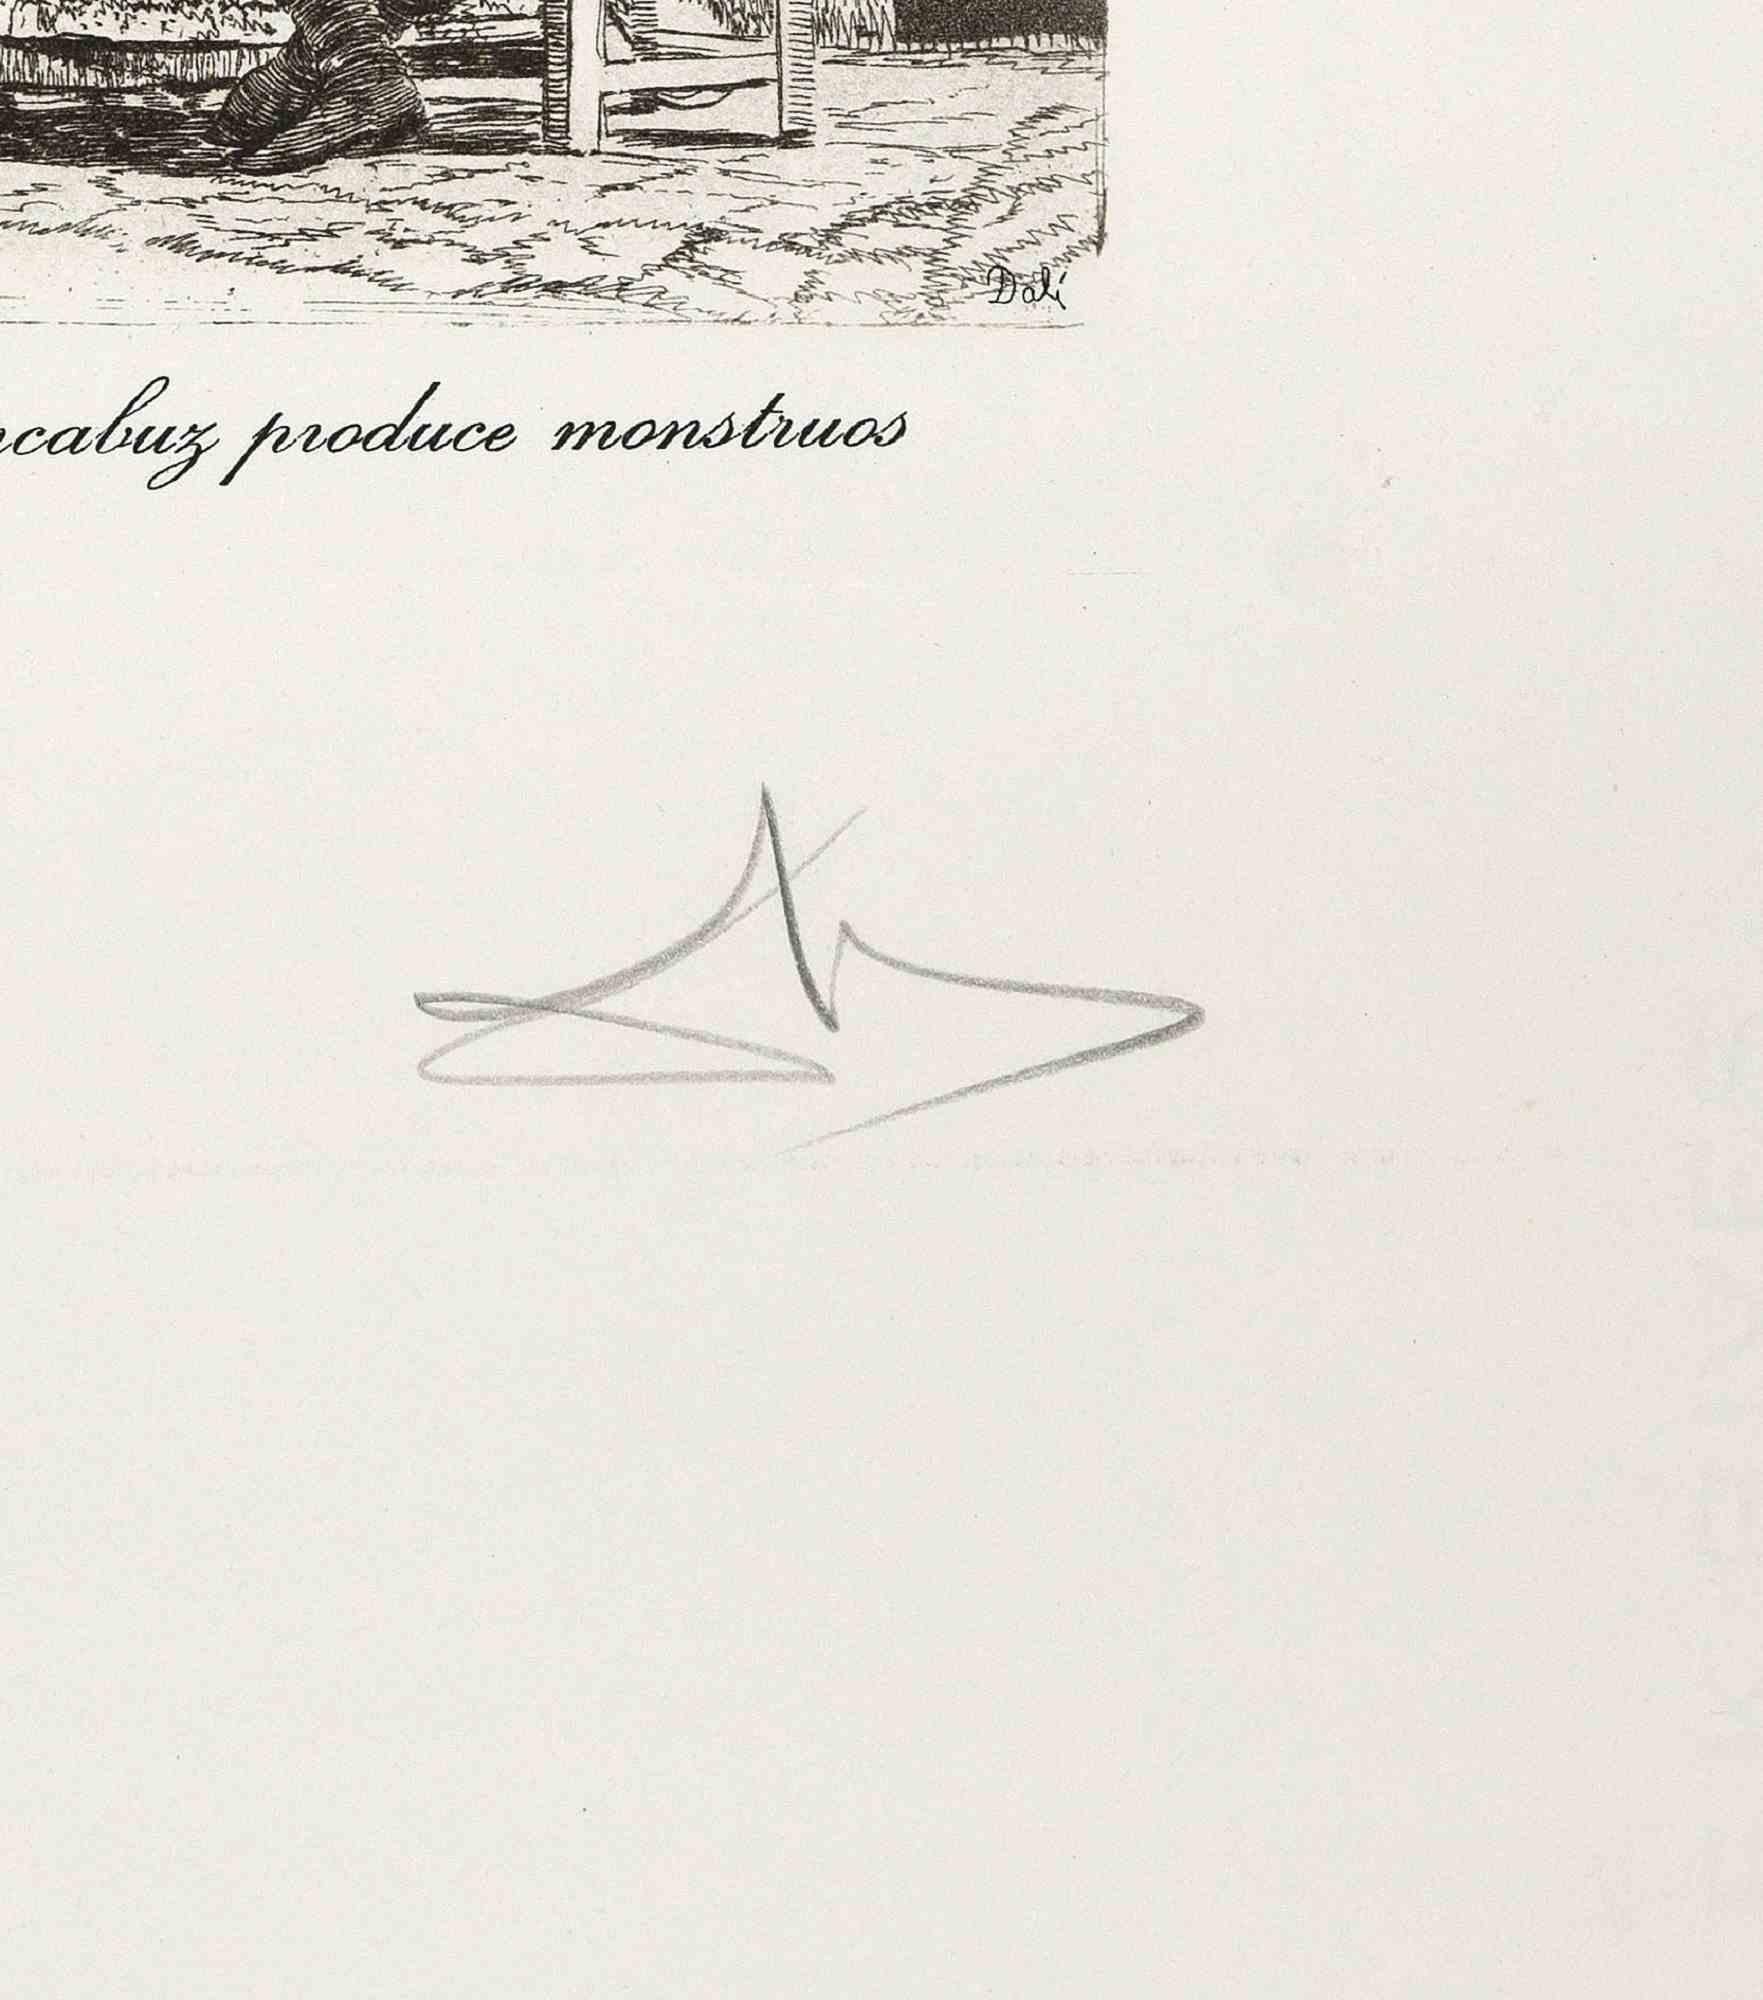  El Arcabuz Produce Monsters - Mischtechnik nach Salvador Dalì - 1970er Jahre (Surrealismus), Print, von Salvador Dalí